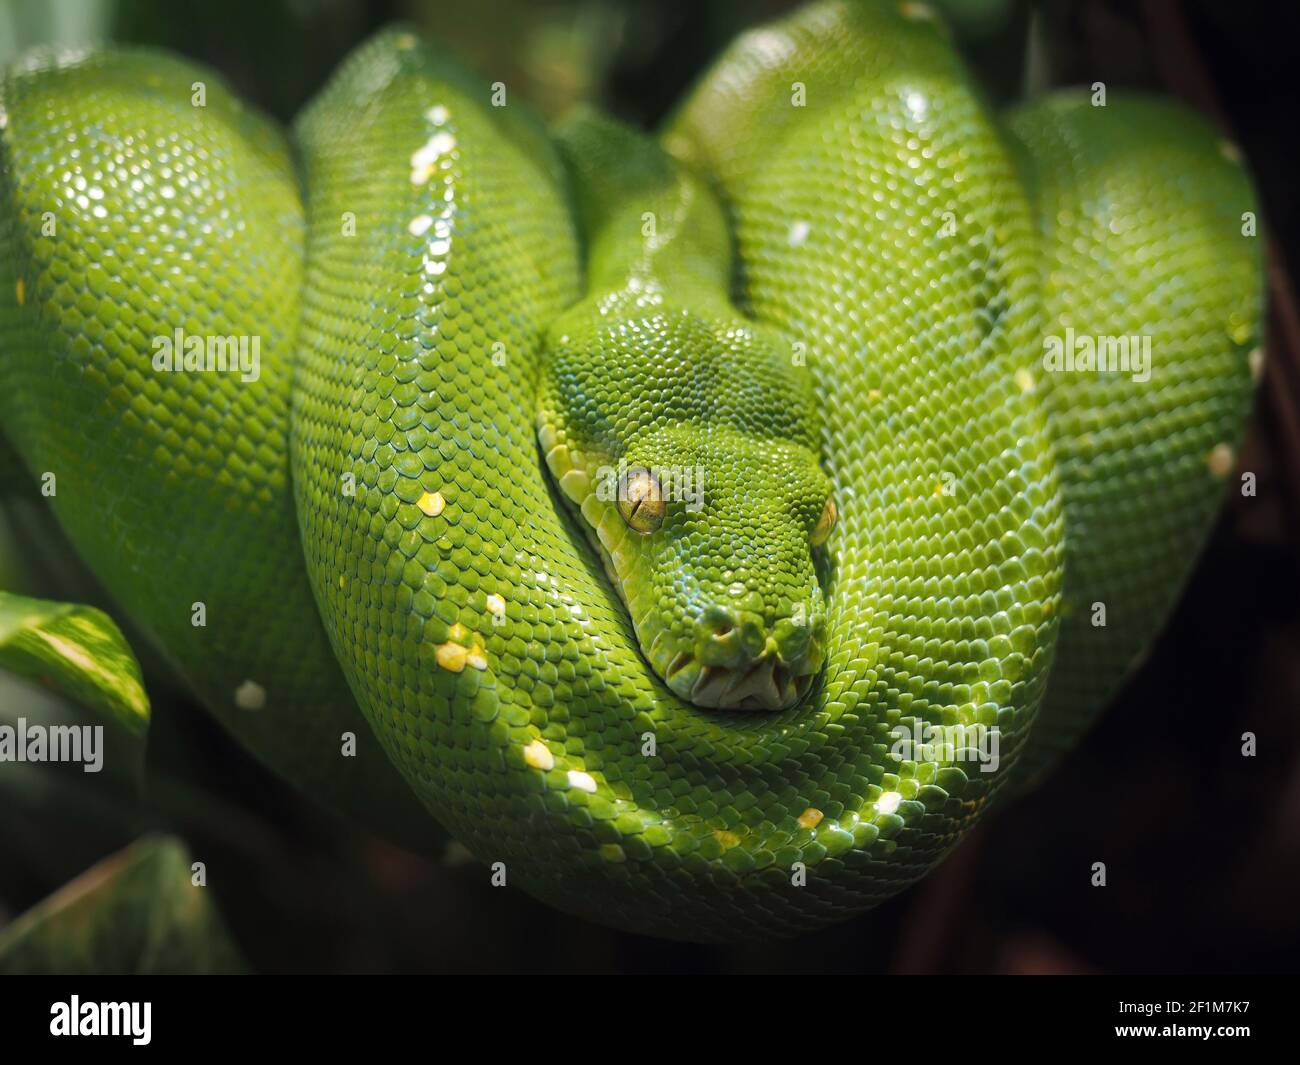 Grünpython (morelia viridis) bequem auf einem Baumzweig gewickelt (Schlangenarten der Familie der Pythonidae). Pariser Zoo. Stockfoto